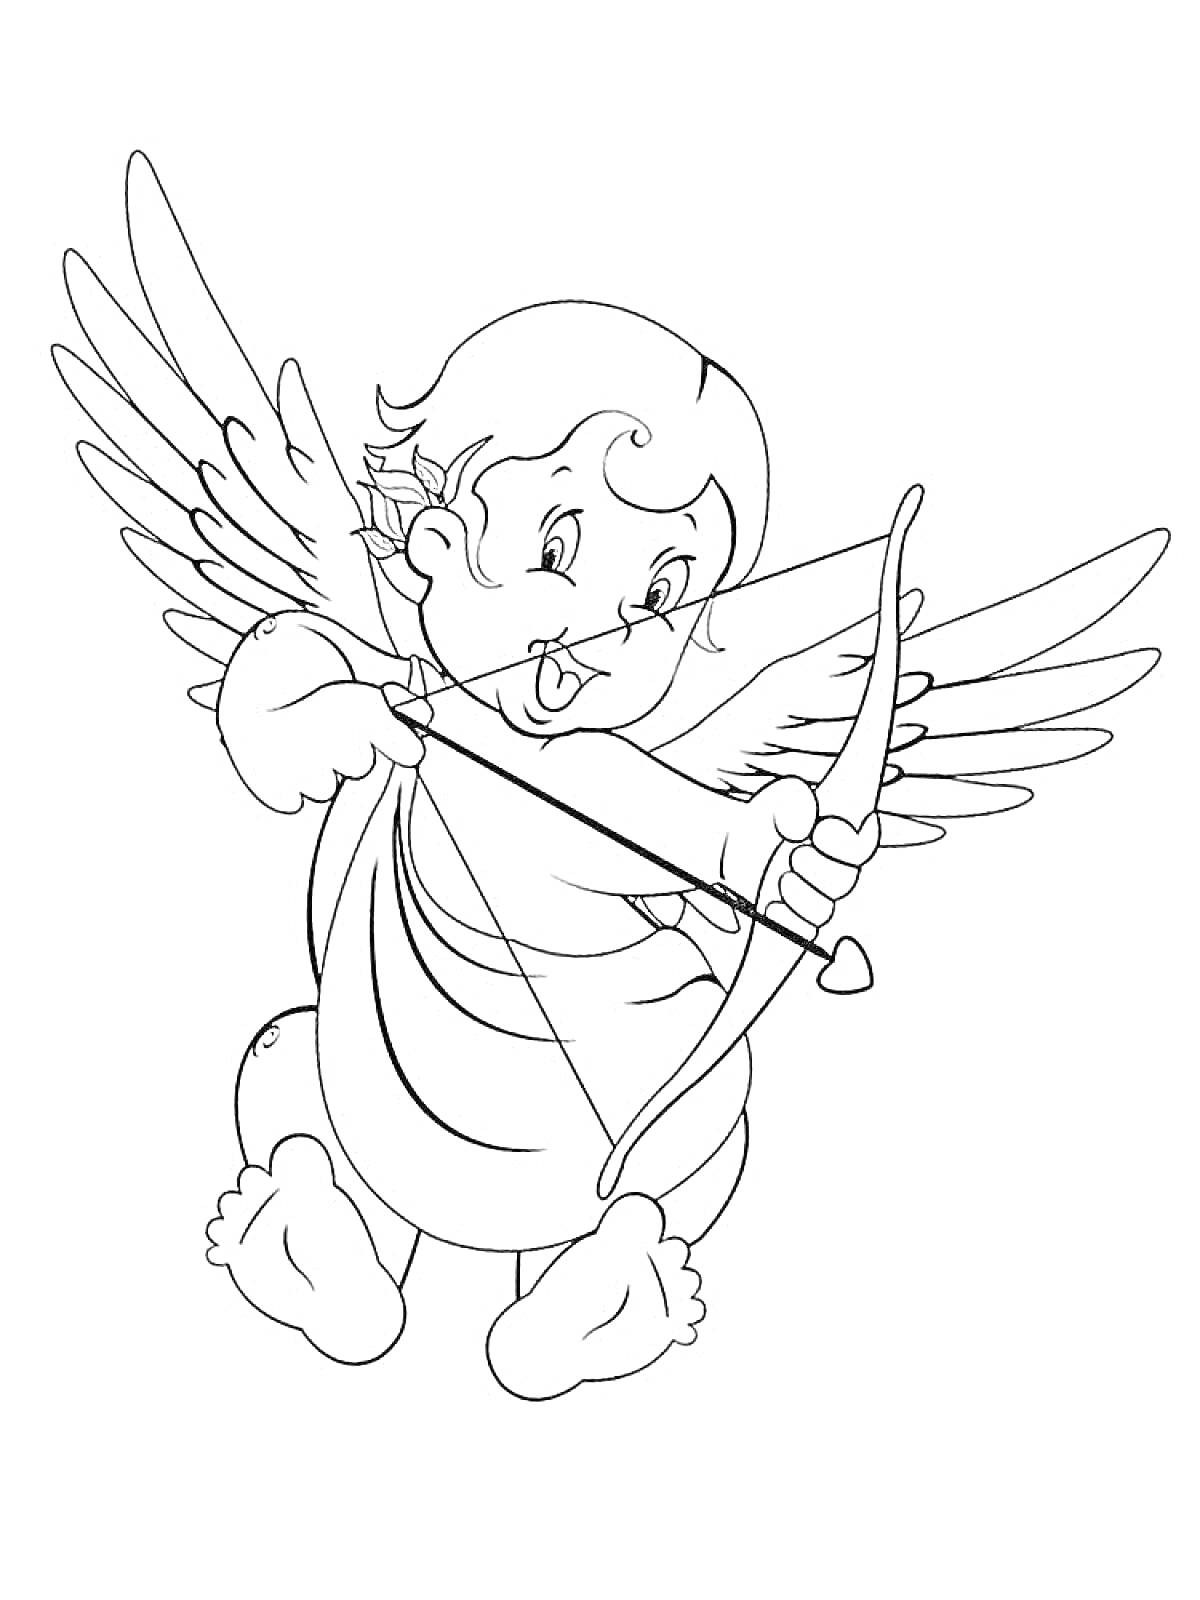 Раскраска Ангел с луком и стрелой